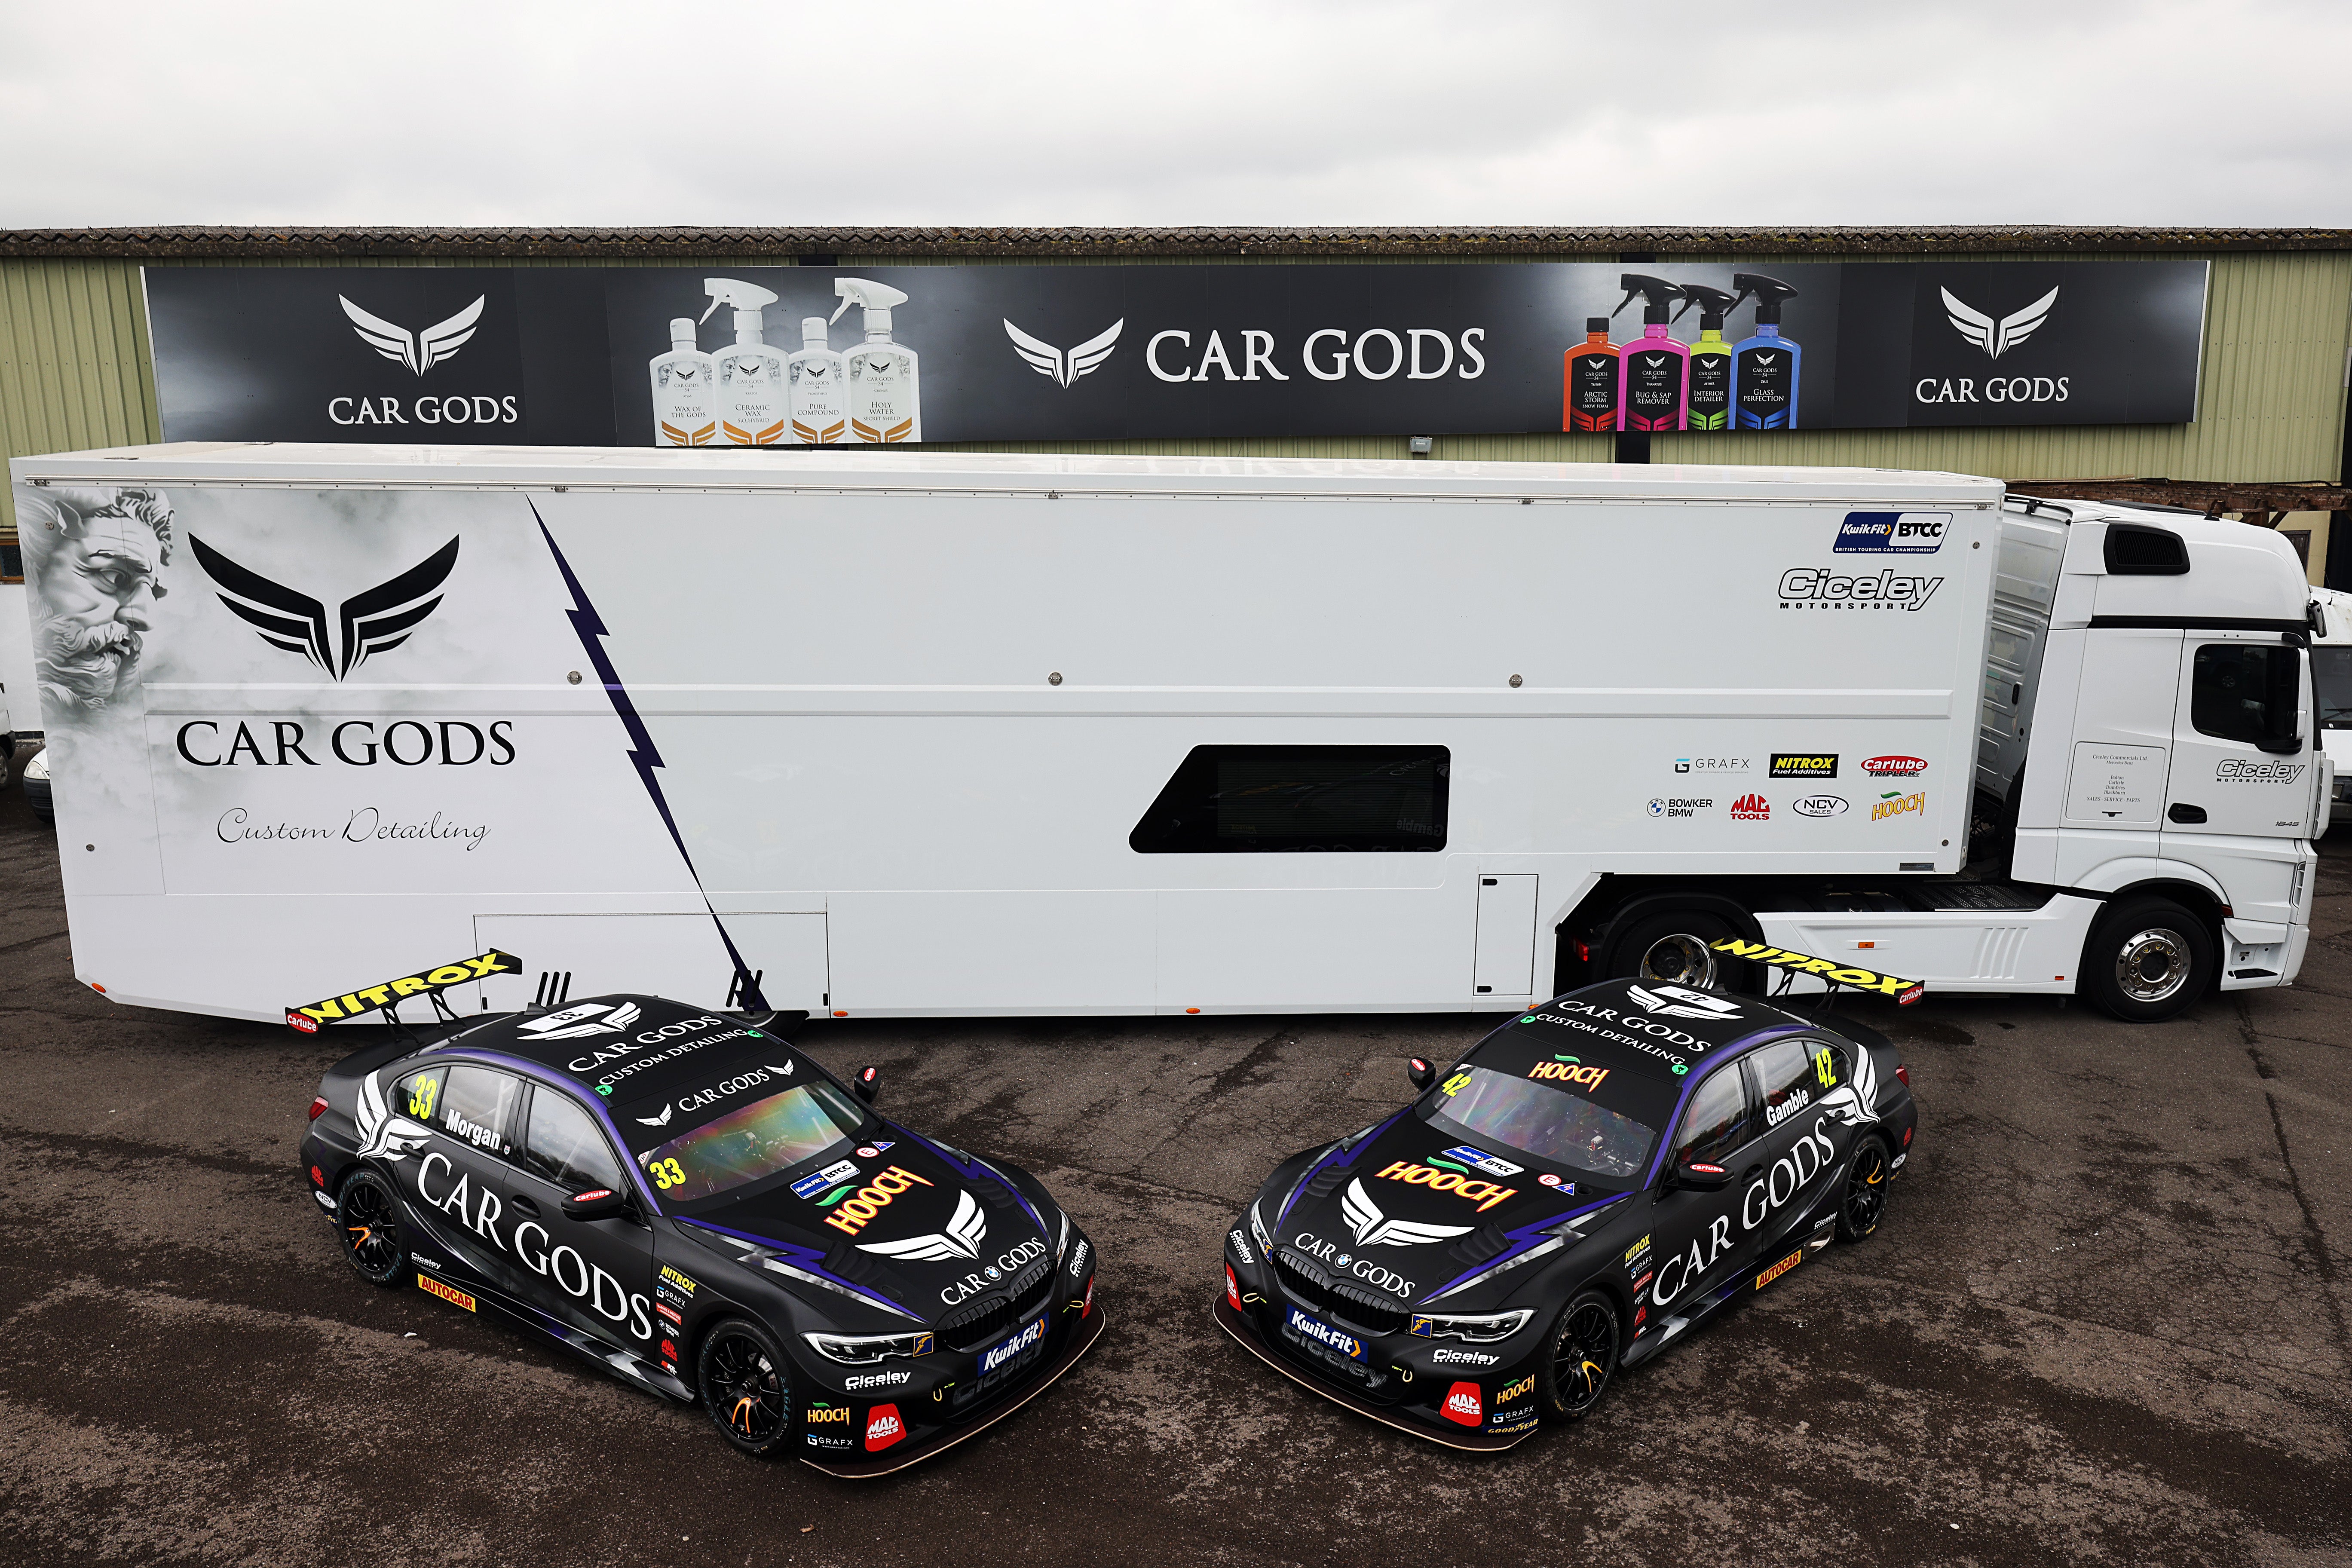 BTCC & Team Car Gods Enters The Hybrid Era